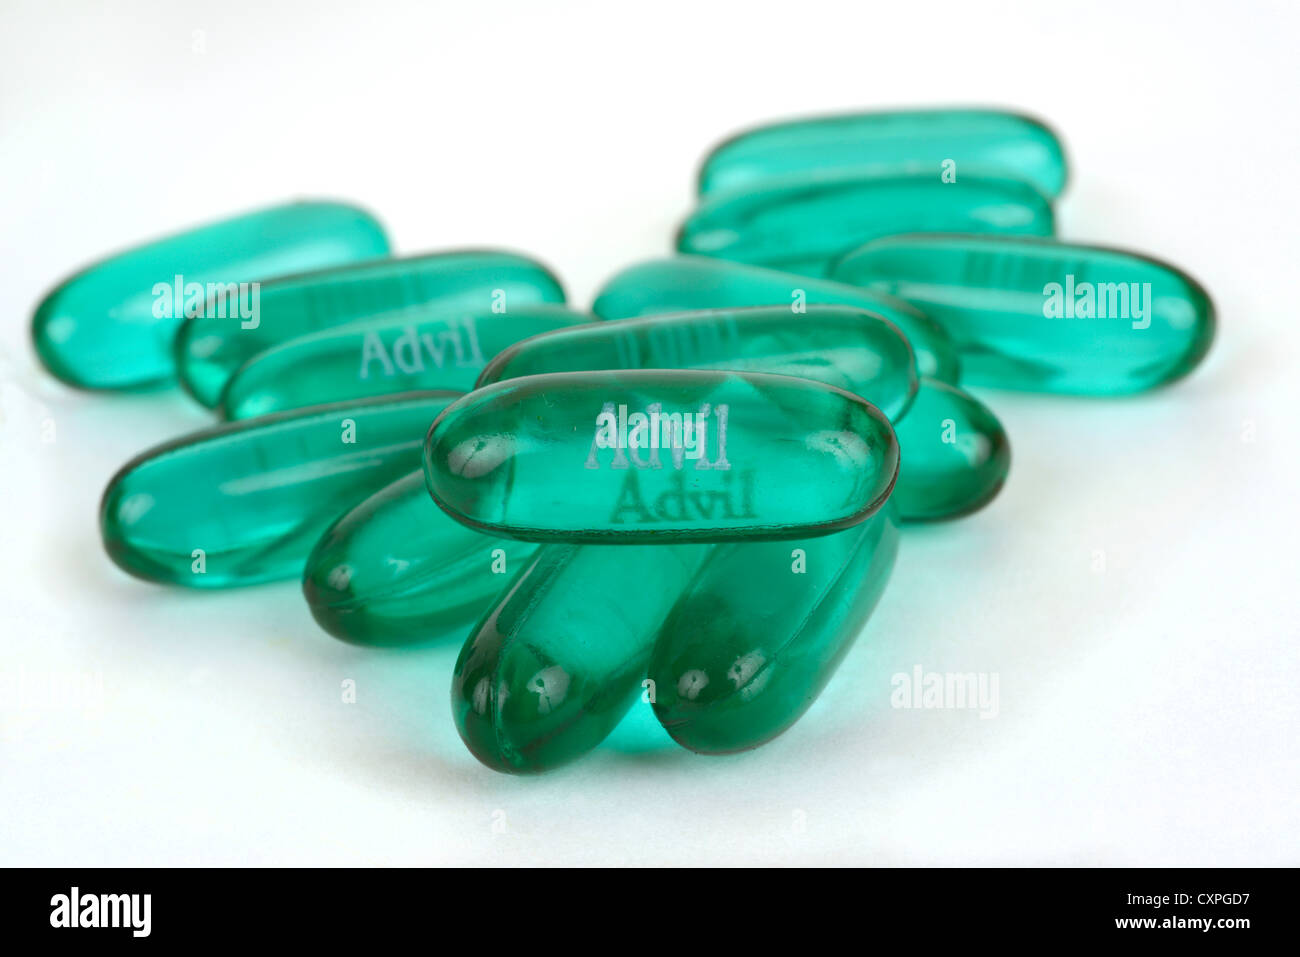 Advil liquid gel capsules. Stock Photo